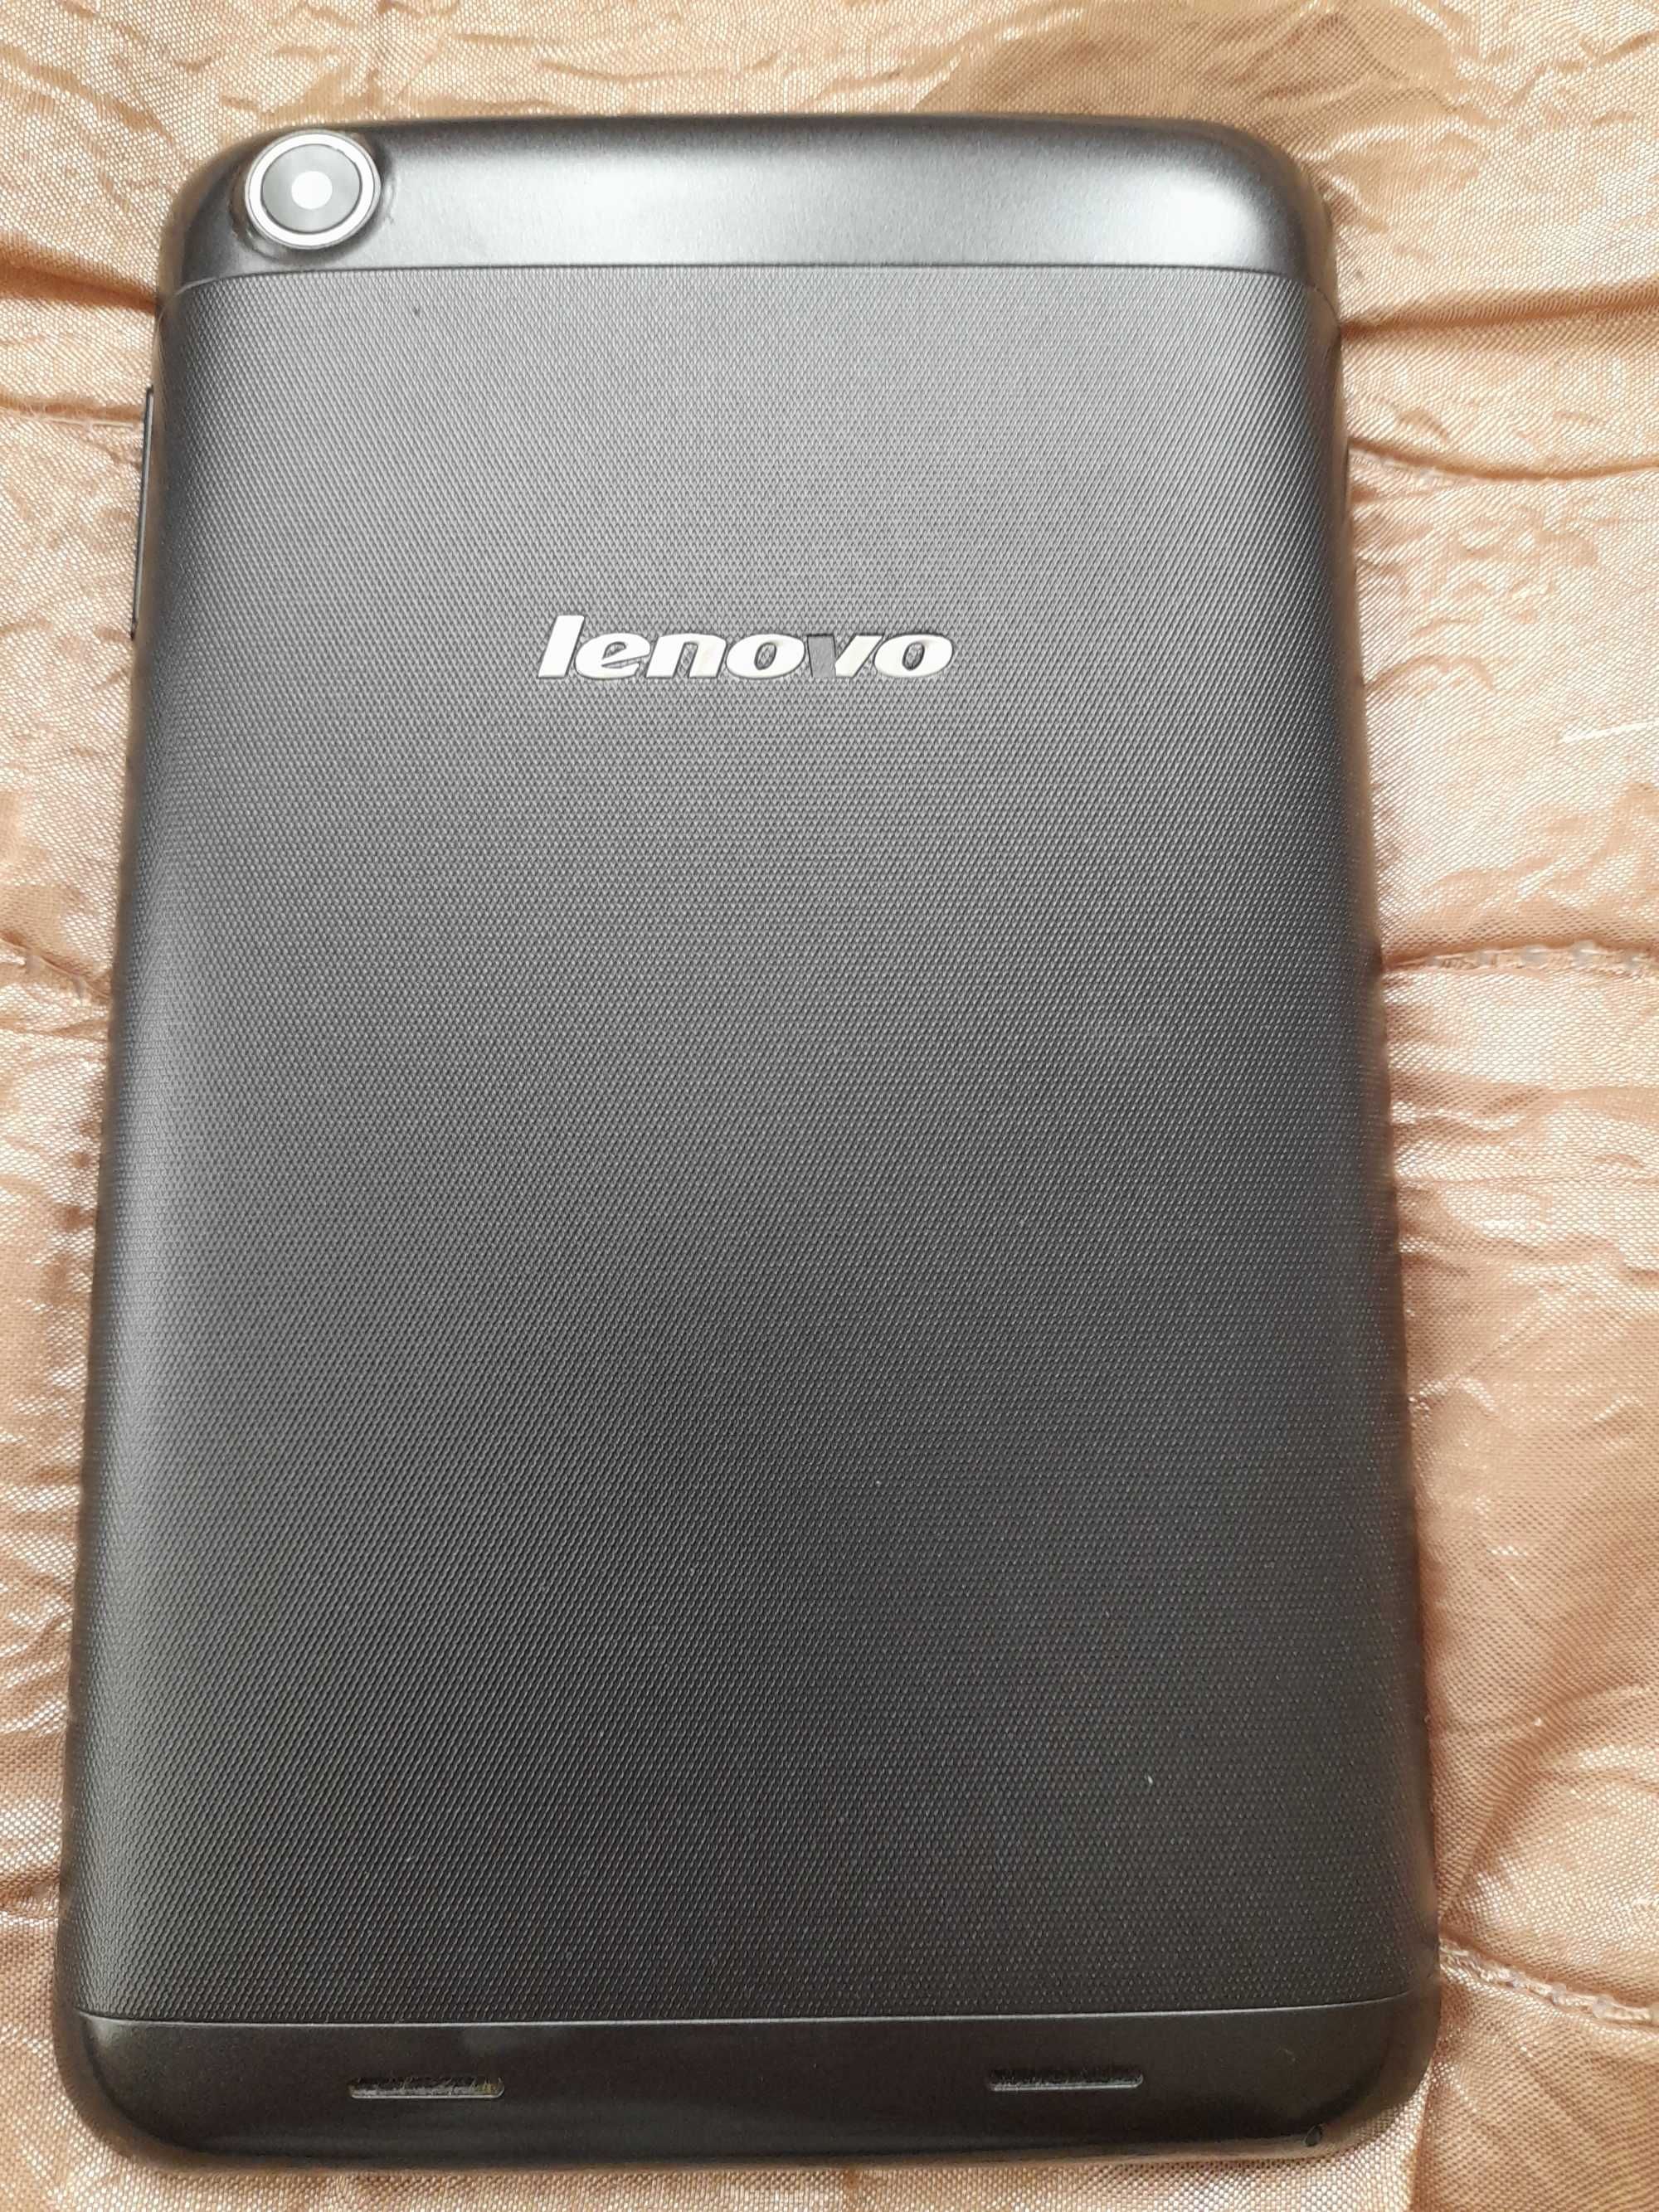 таблет Lenovo Idea Tab 3000